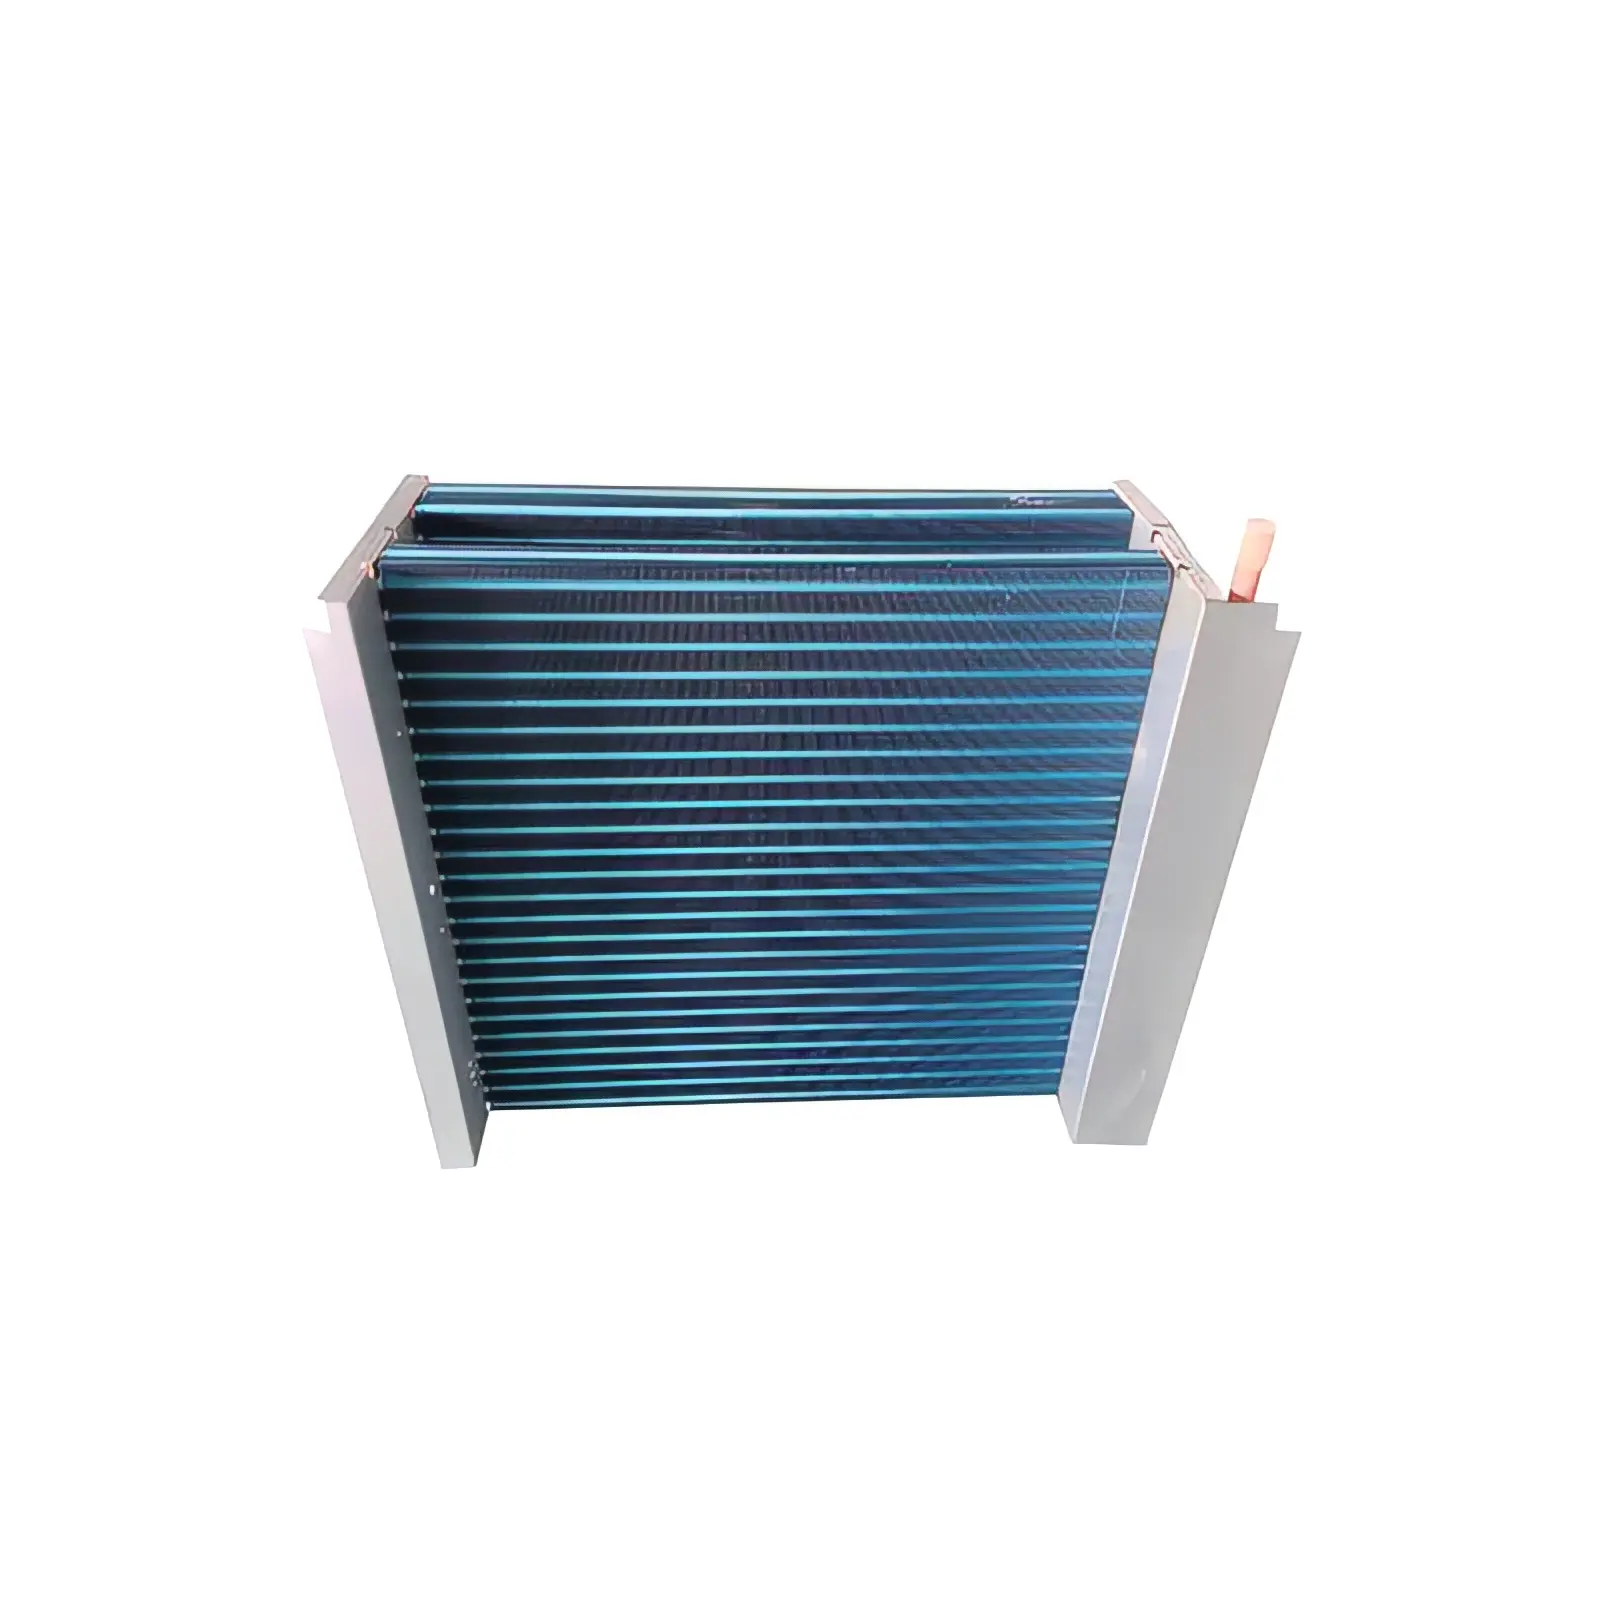 Hete Verkoop Ventilator Aluminium Fin Luchtgekoelde Condensor Voor Koude Opslag Kamer Koeling Condensatie Eenheid Industriële Ontvochtiger